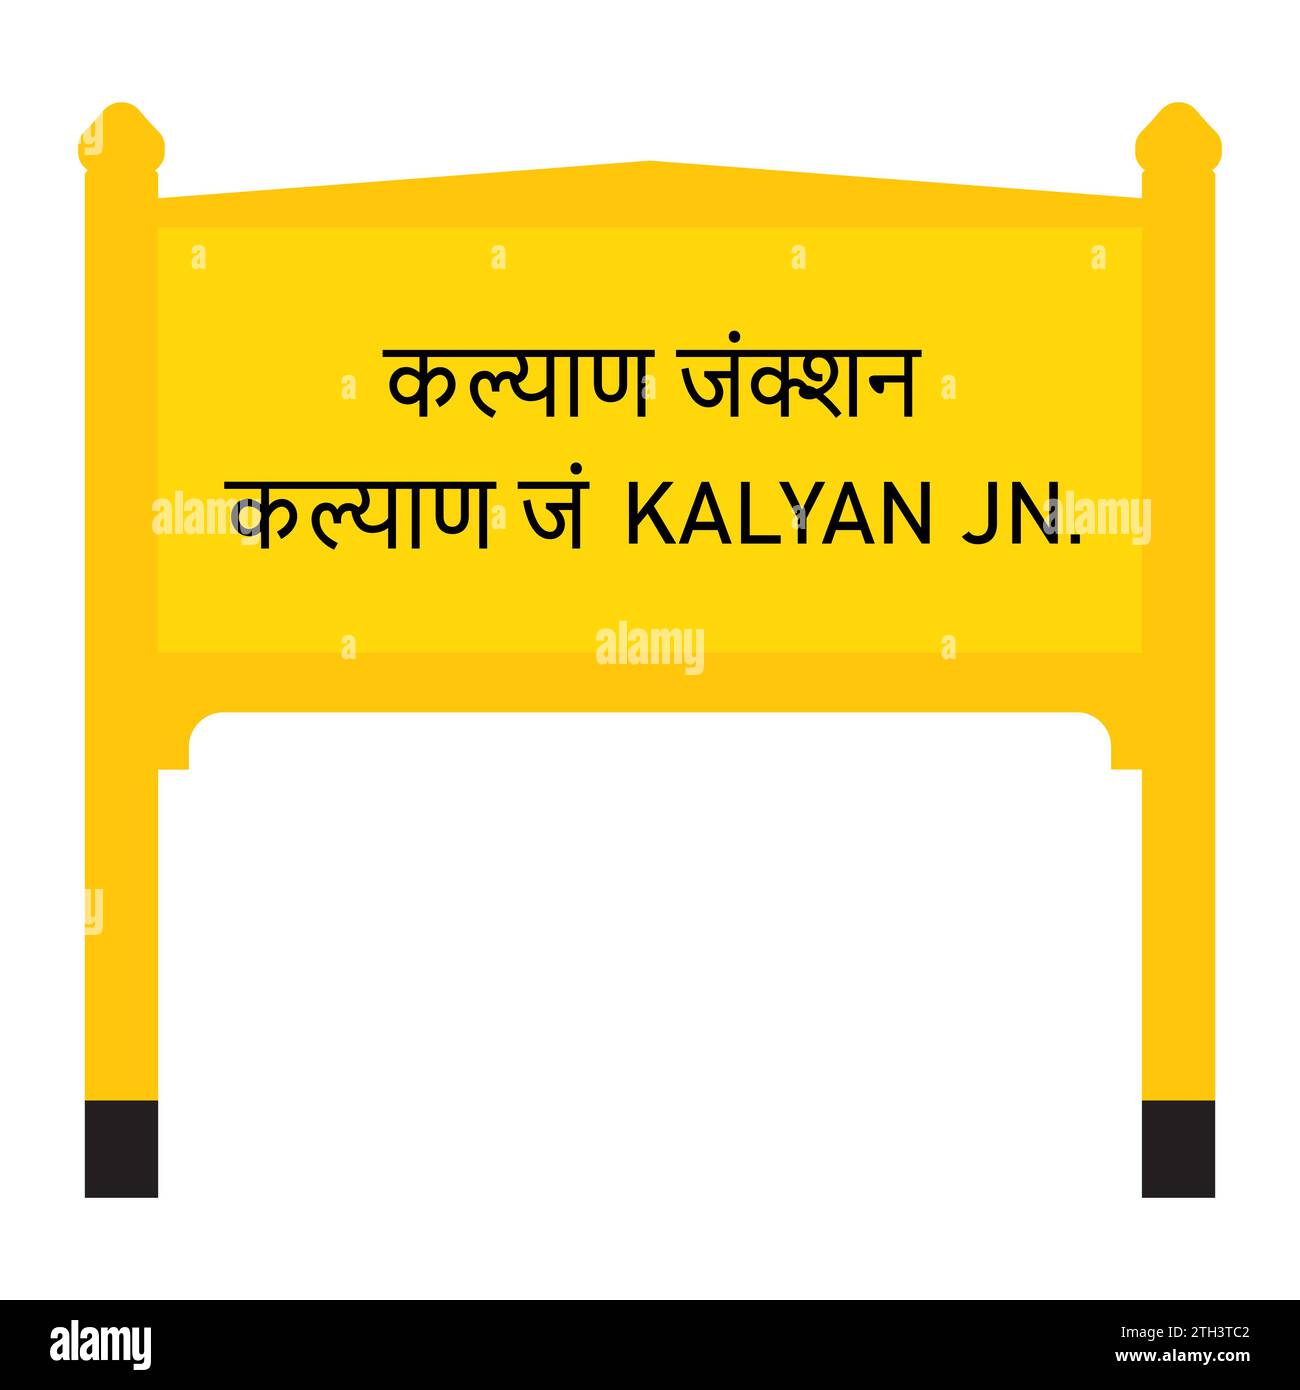 Kalyan junction in Mumbai railway board vector illustration isolated on white Stock Vector